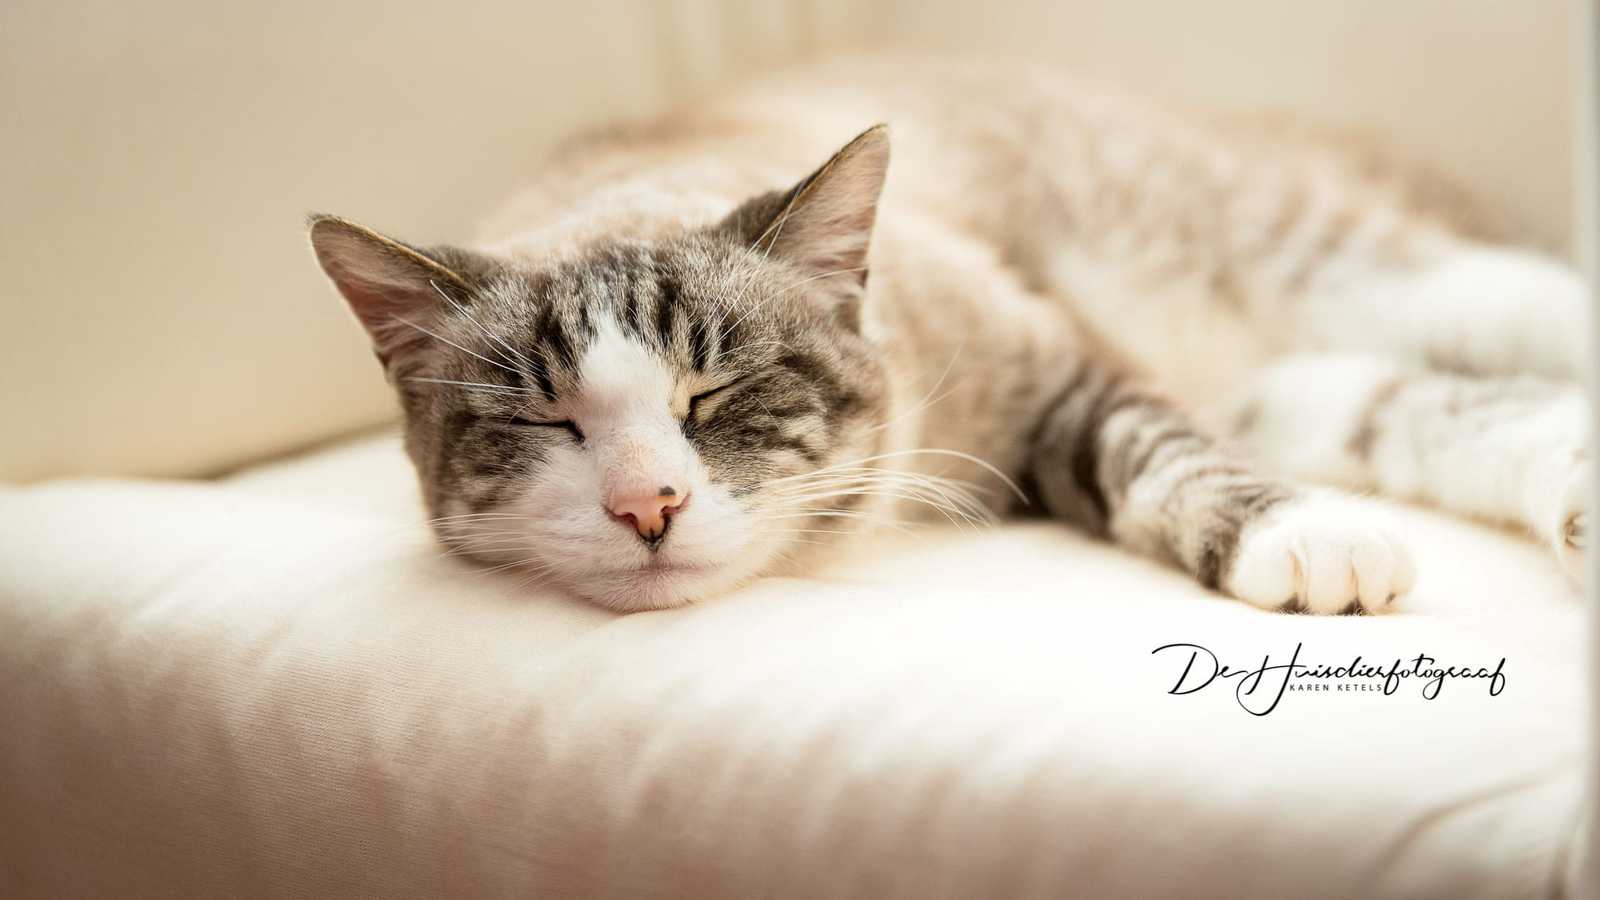 Portret van een zalig slapende kat. Hij ligt met zijn neus op een kussen en geniet volop. Portret door de Huisdierfotograaf Karen Ketels